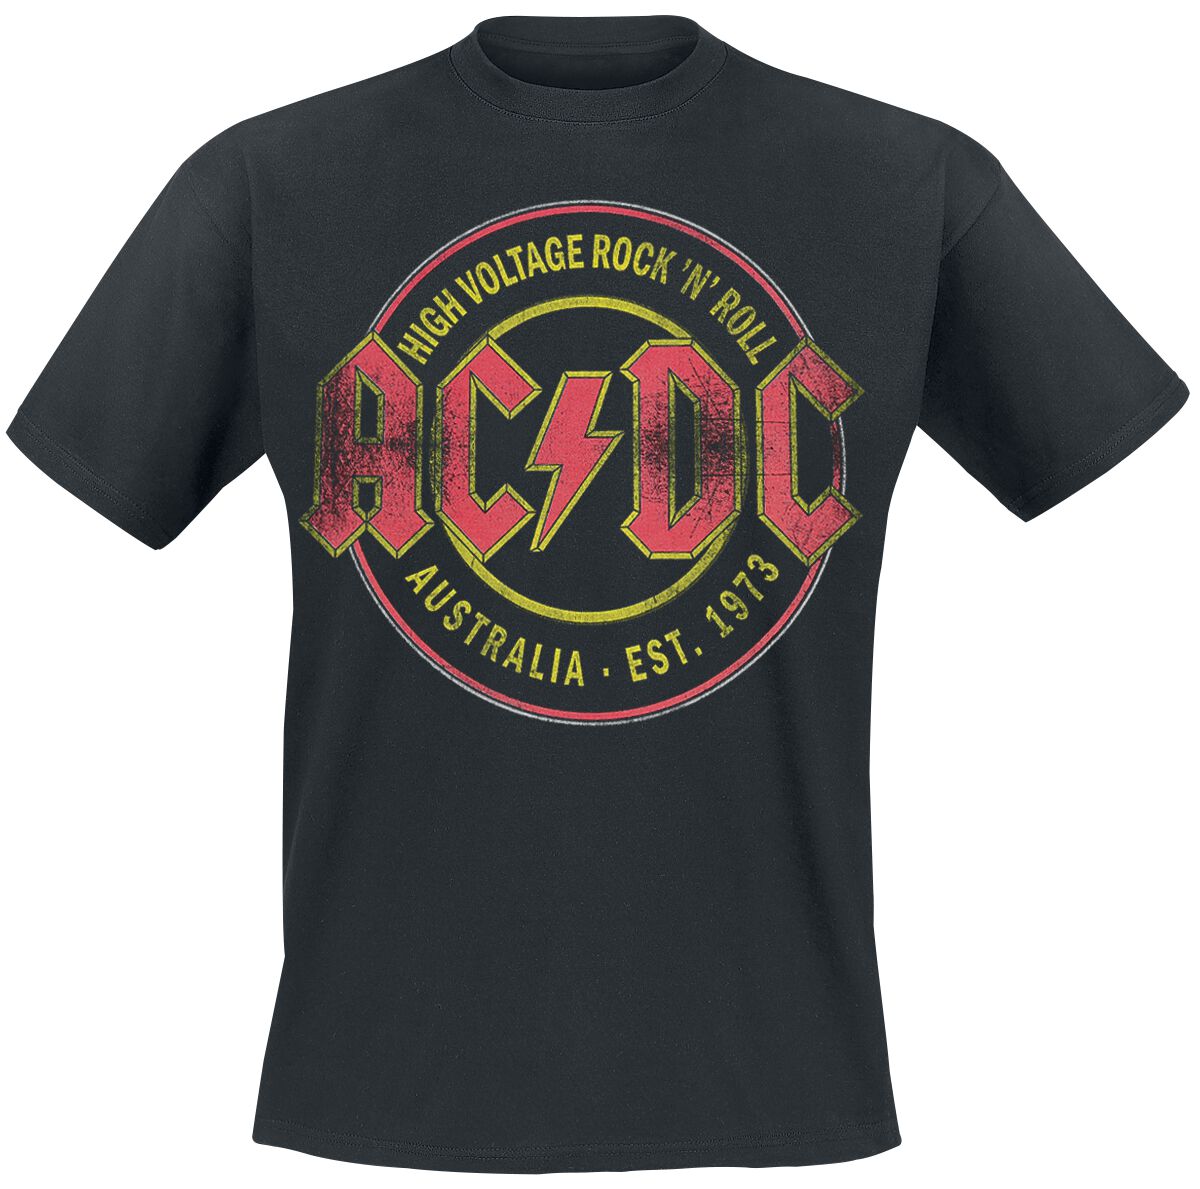 High Voltage Rock 'N' Roll Australia Est. 1973 T-Shirt schwarz von AC/DC